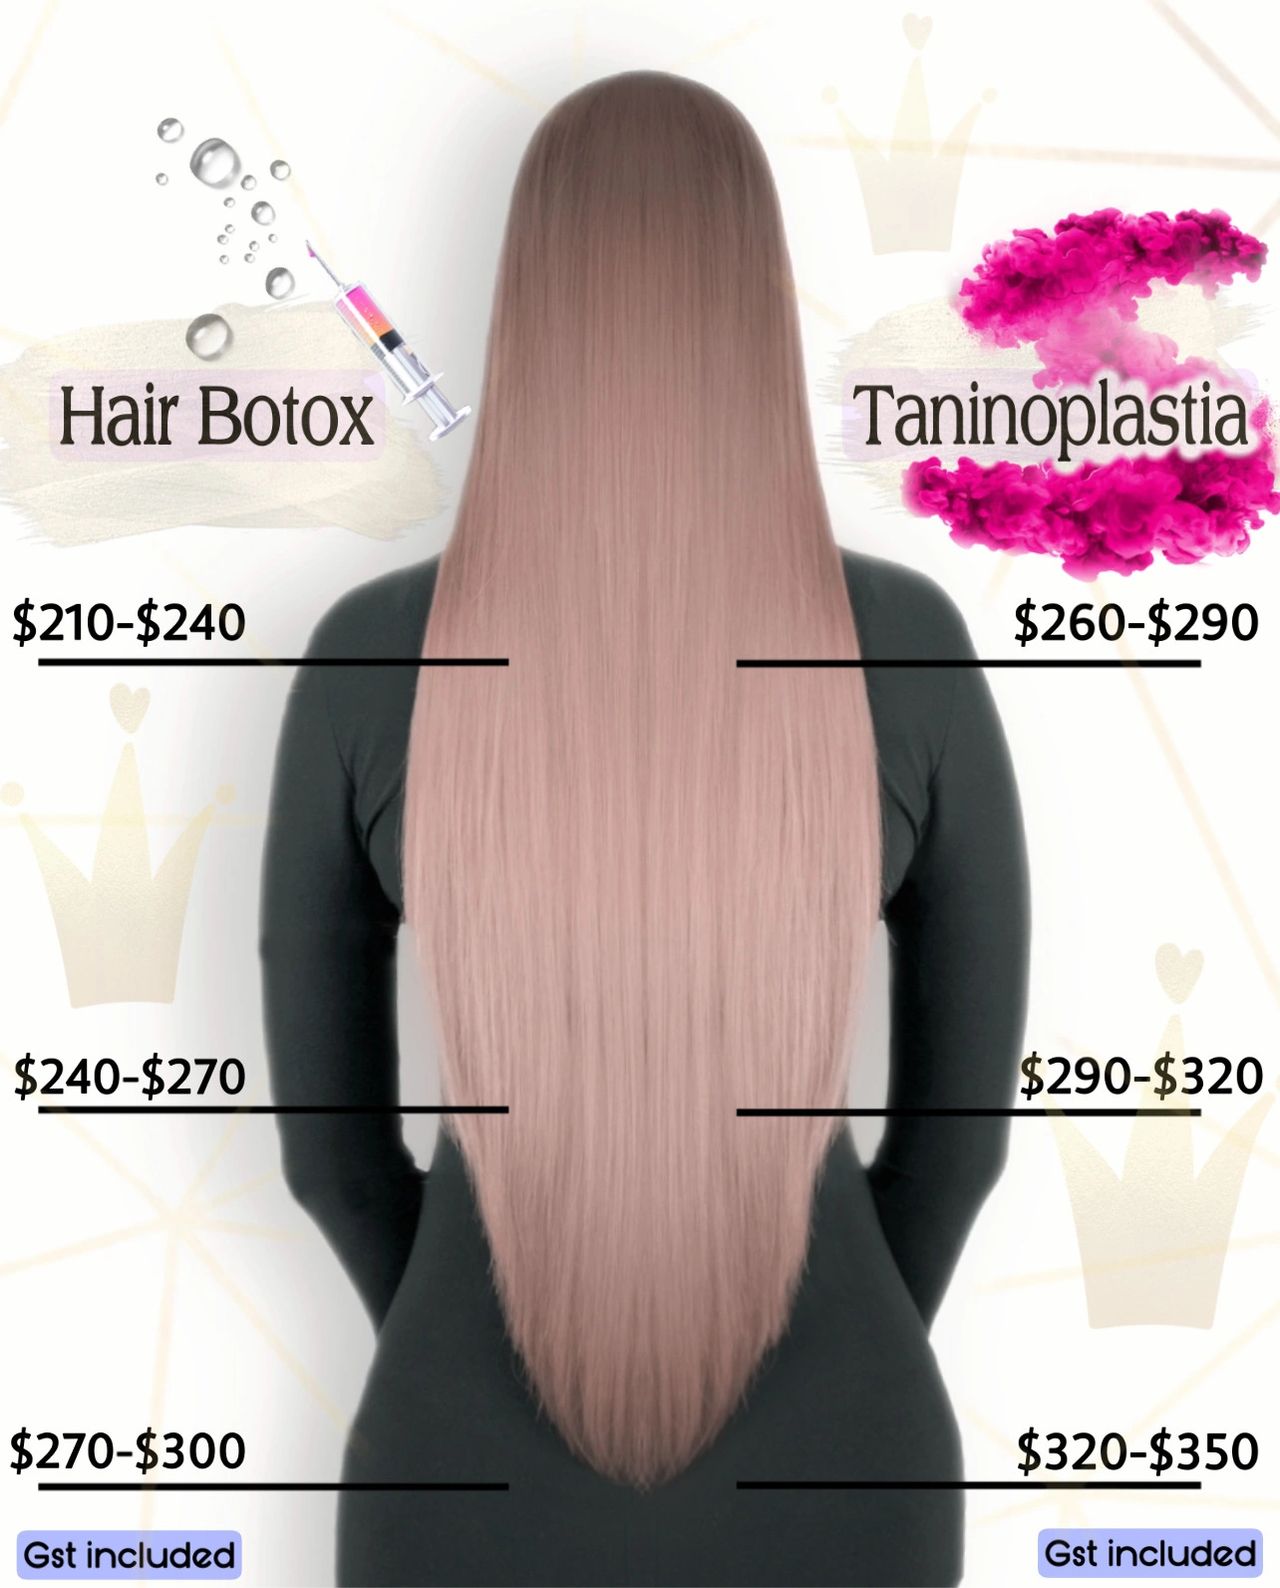 Hair botox and Taninoplastia treatment